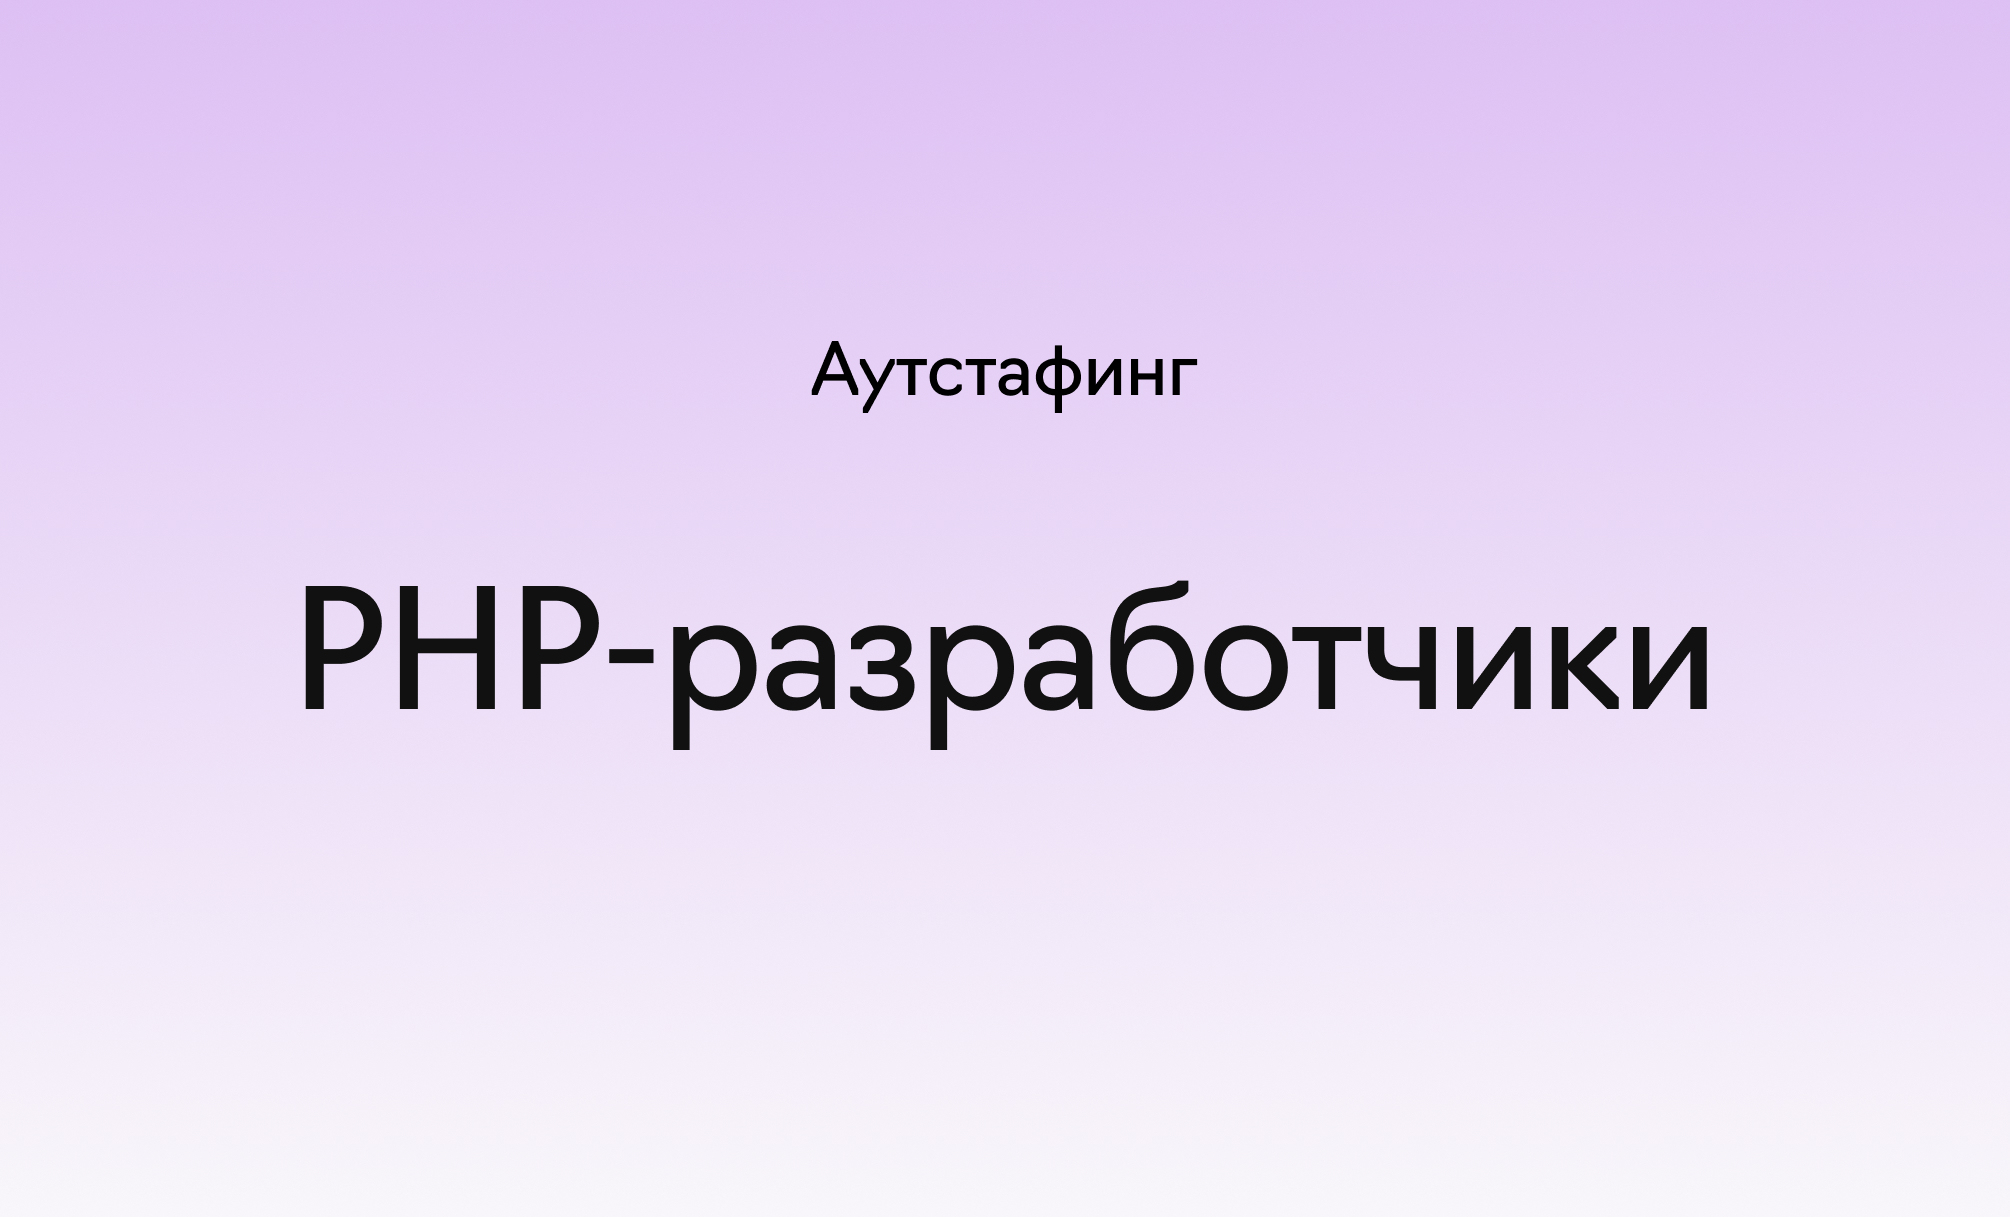 Аутстаффинг PHP-разработчиков в&nbsp;«Лайв&nbsp;Тайпинге», фотография 1